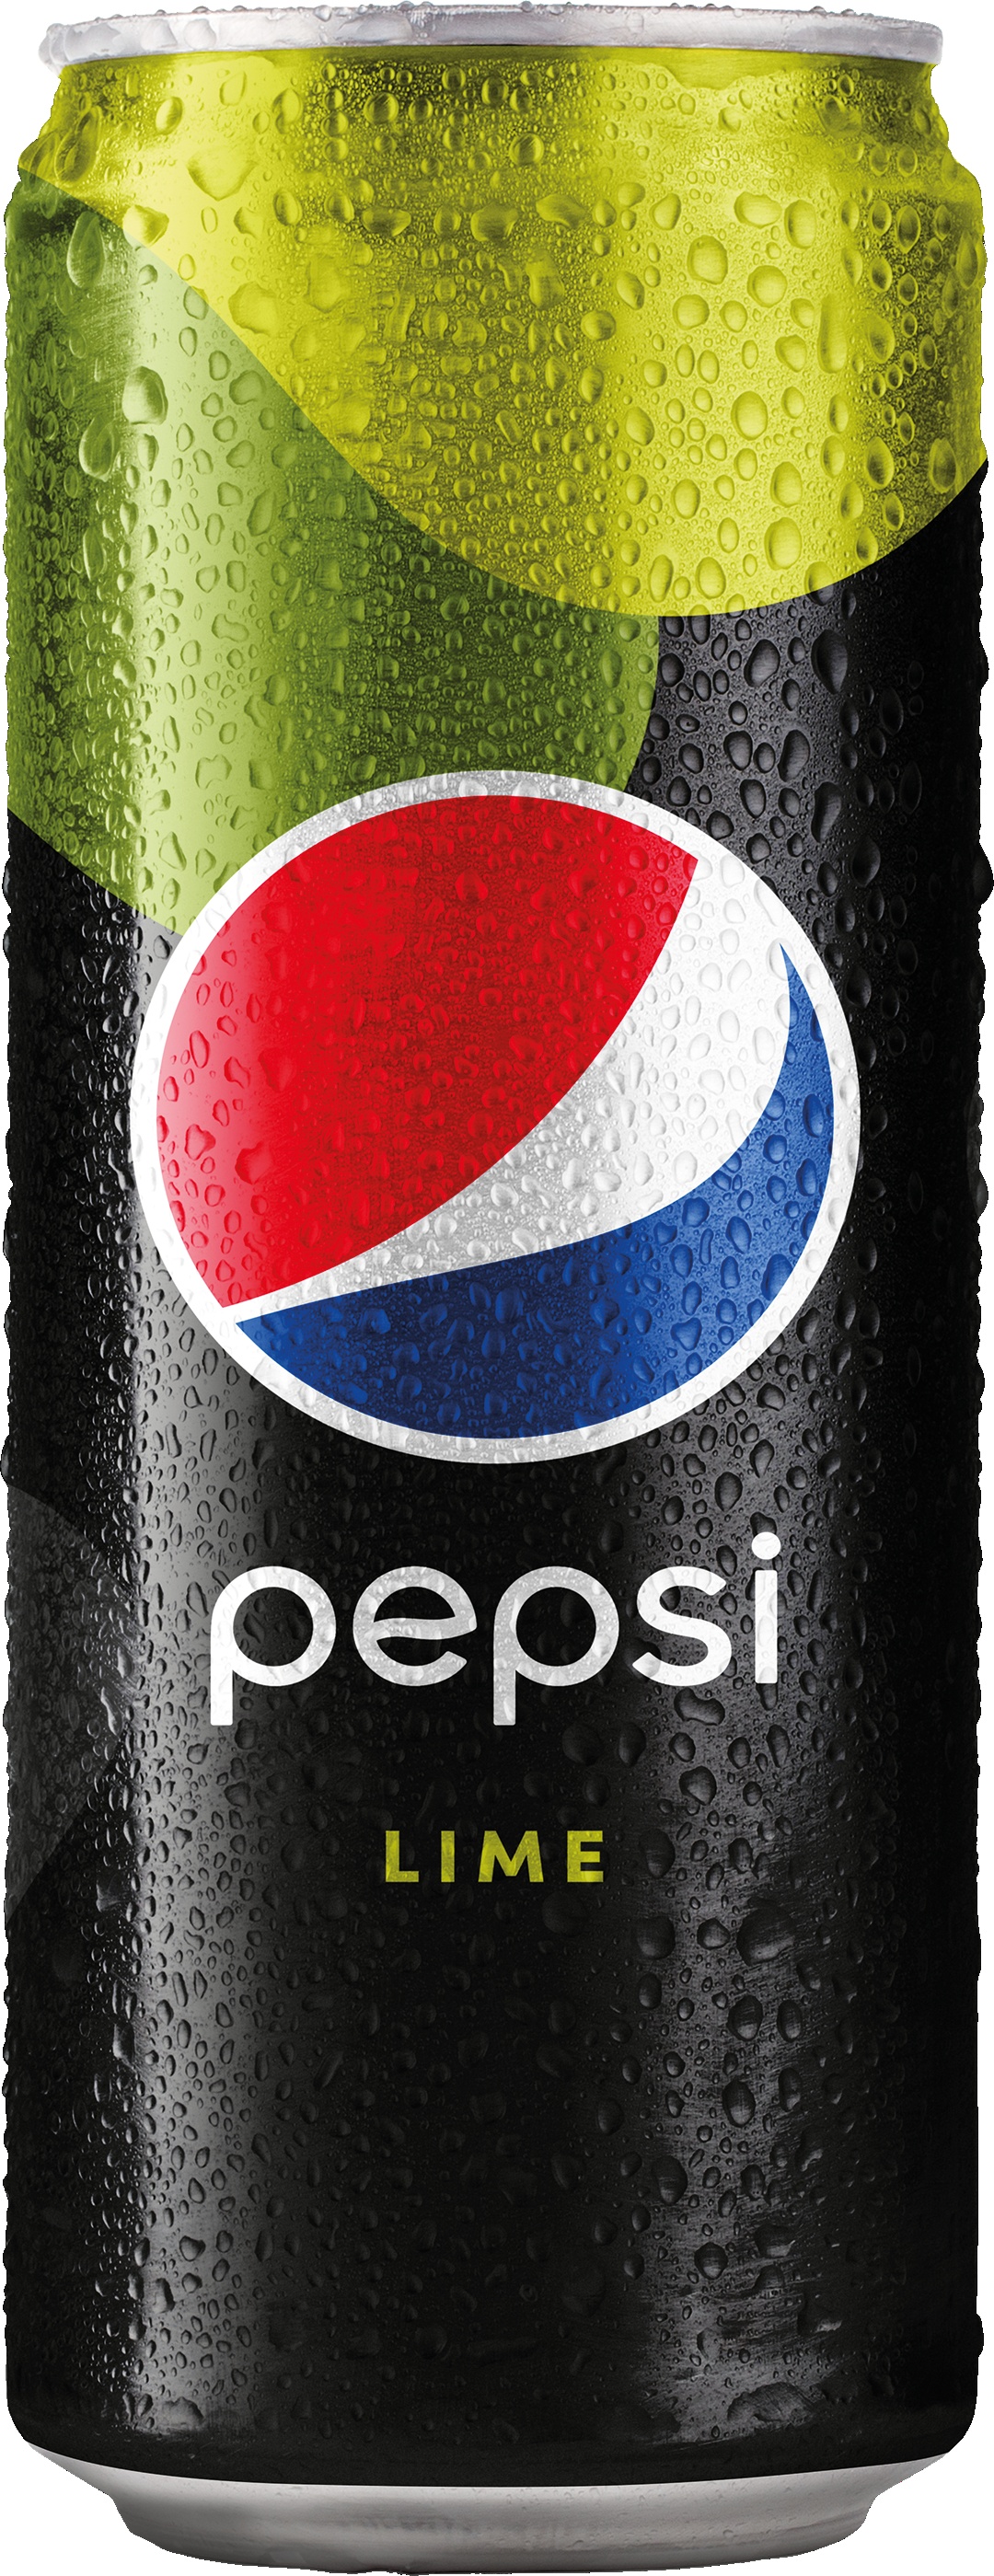 Slika za Sok gazirani Pepsi lime limenka 0,33 l